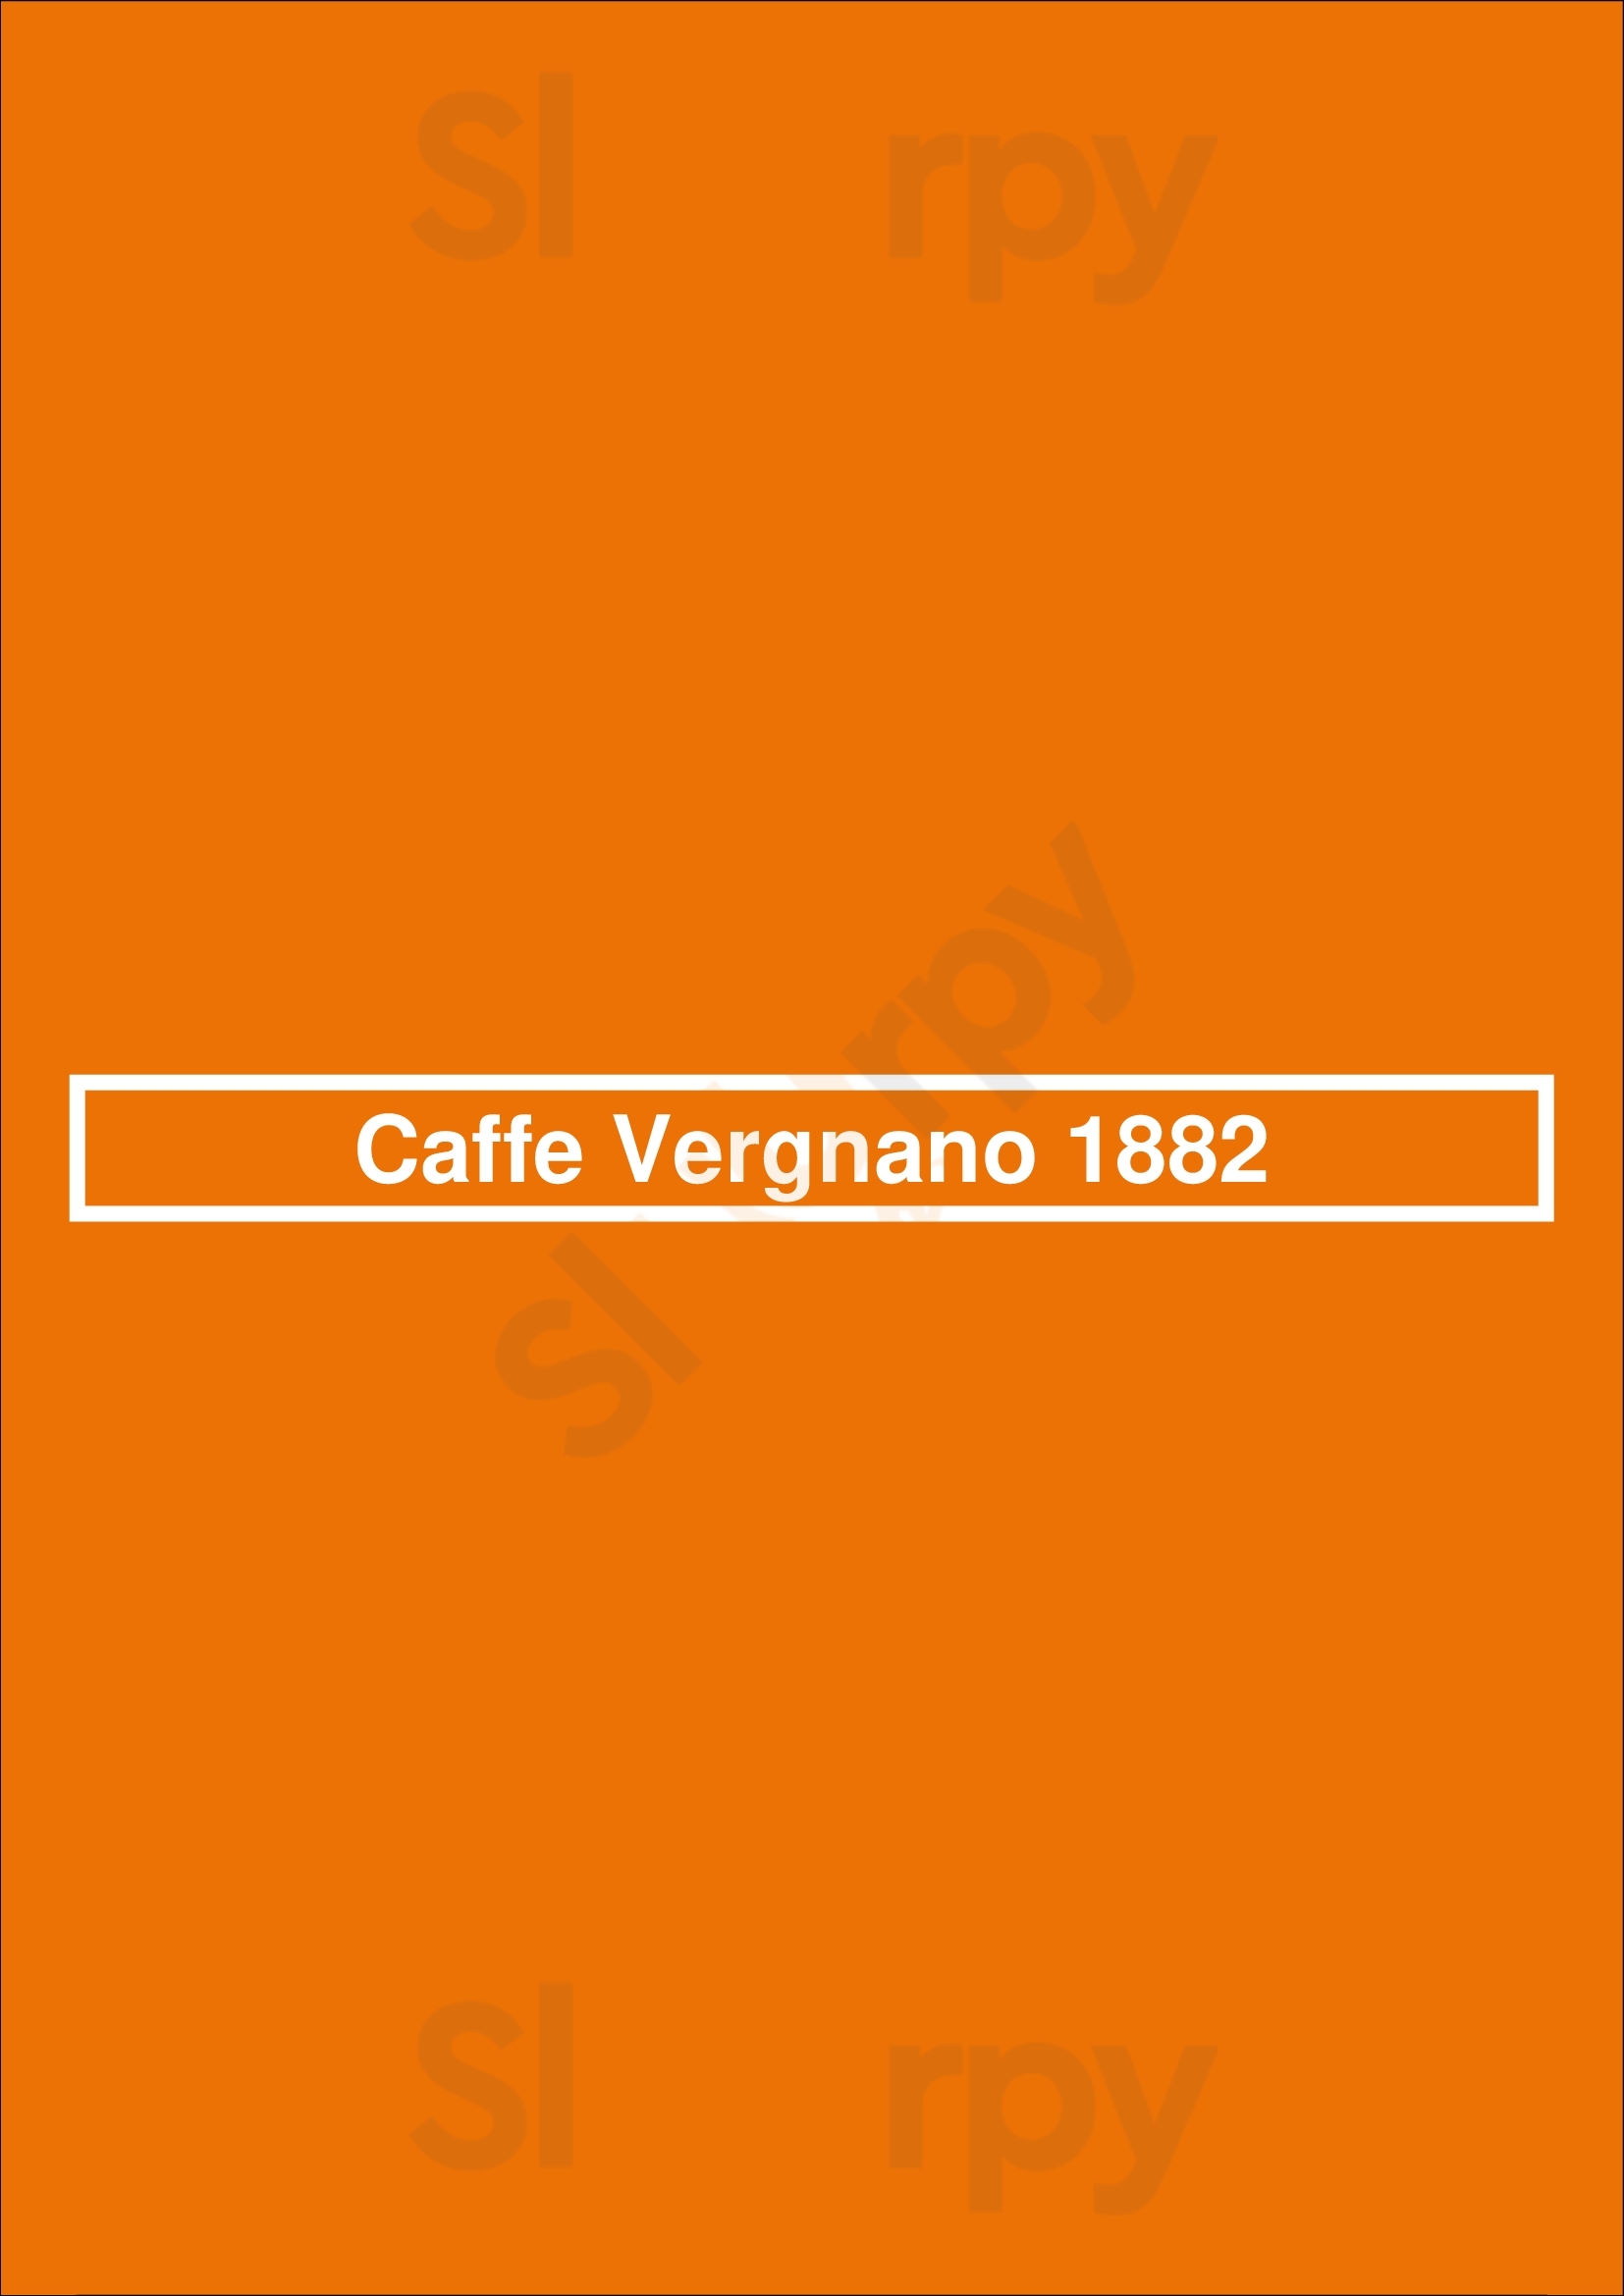 Cafe Vergnano 1882 Bray Menu - 1